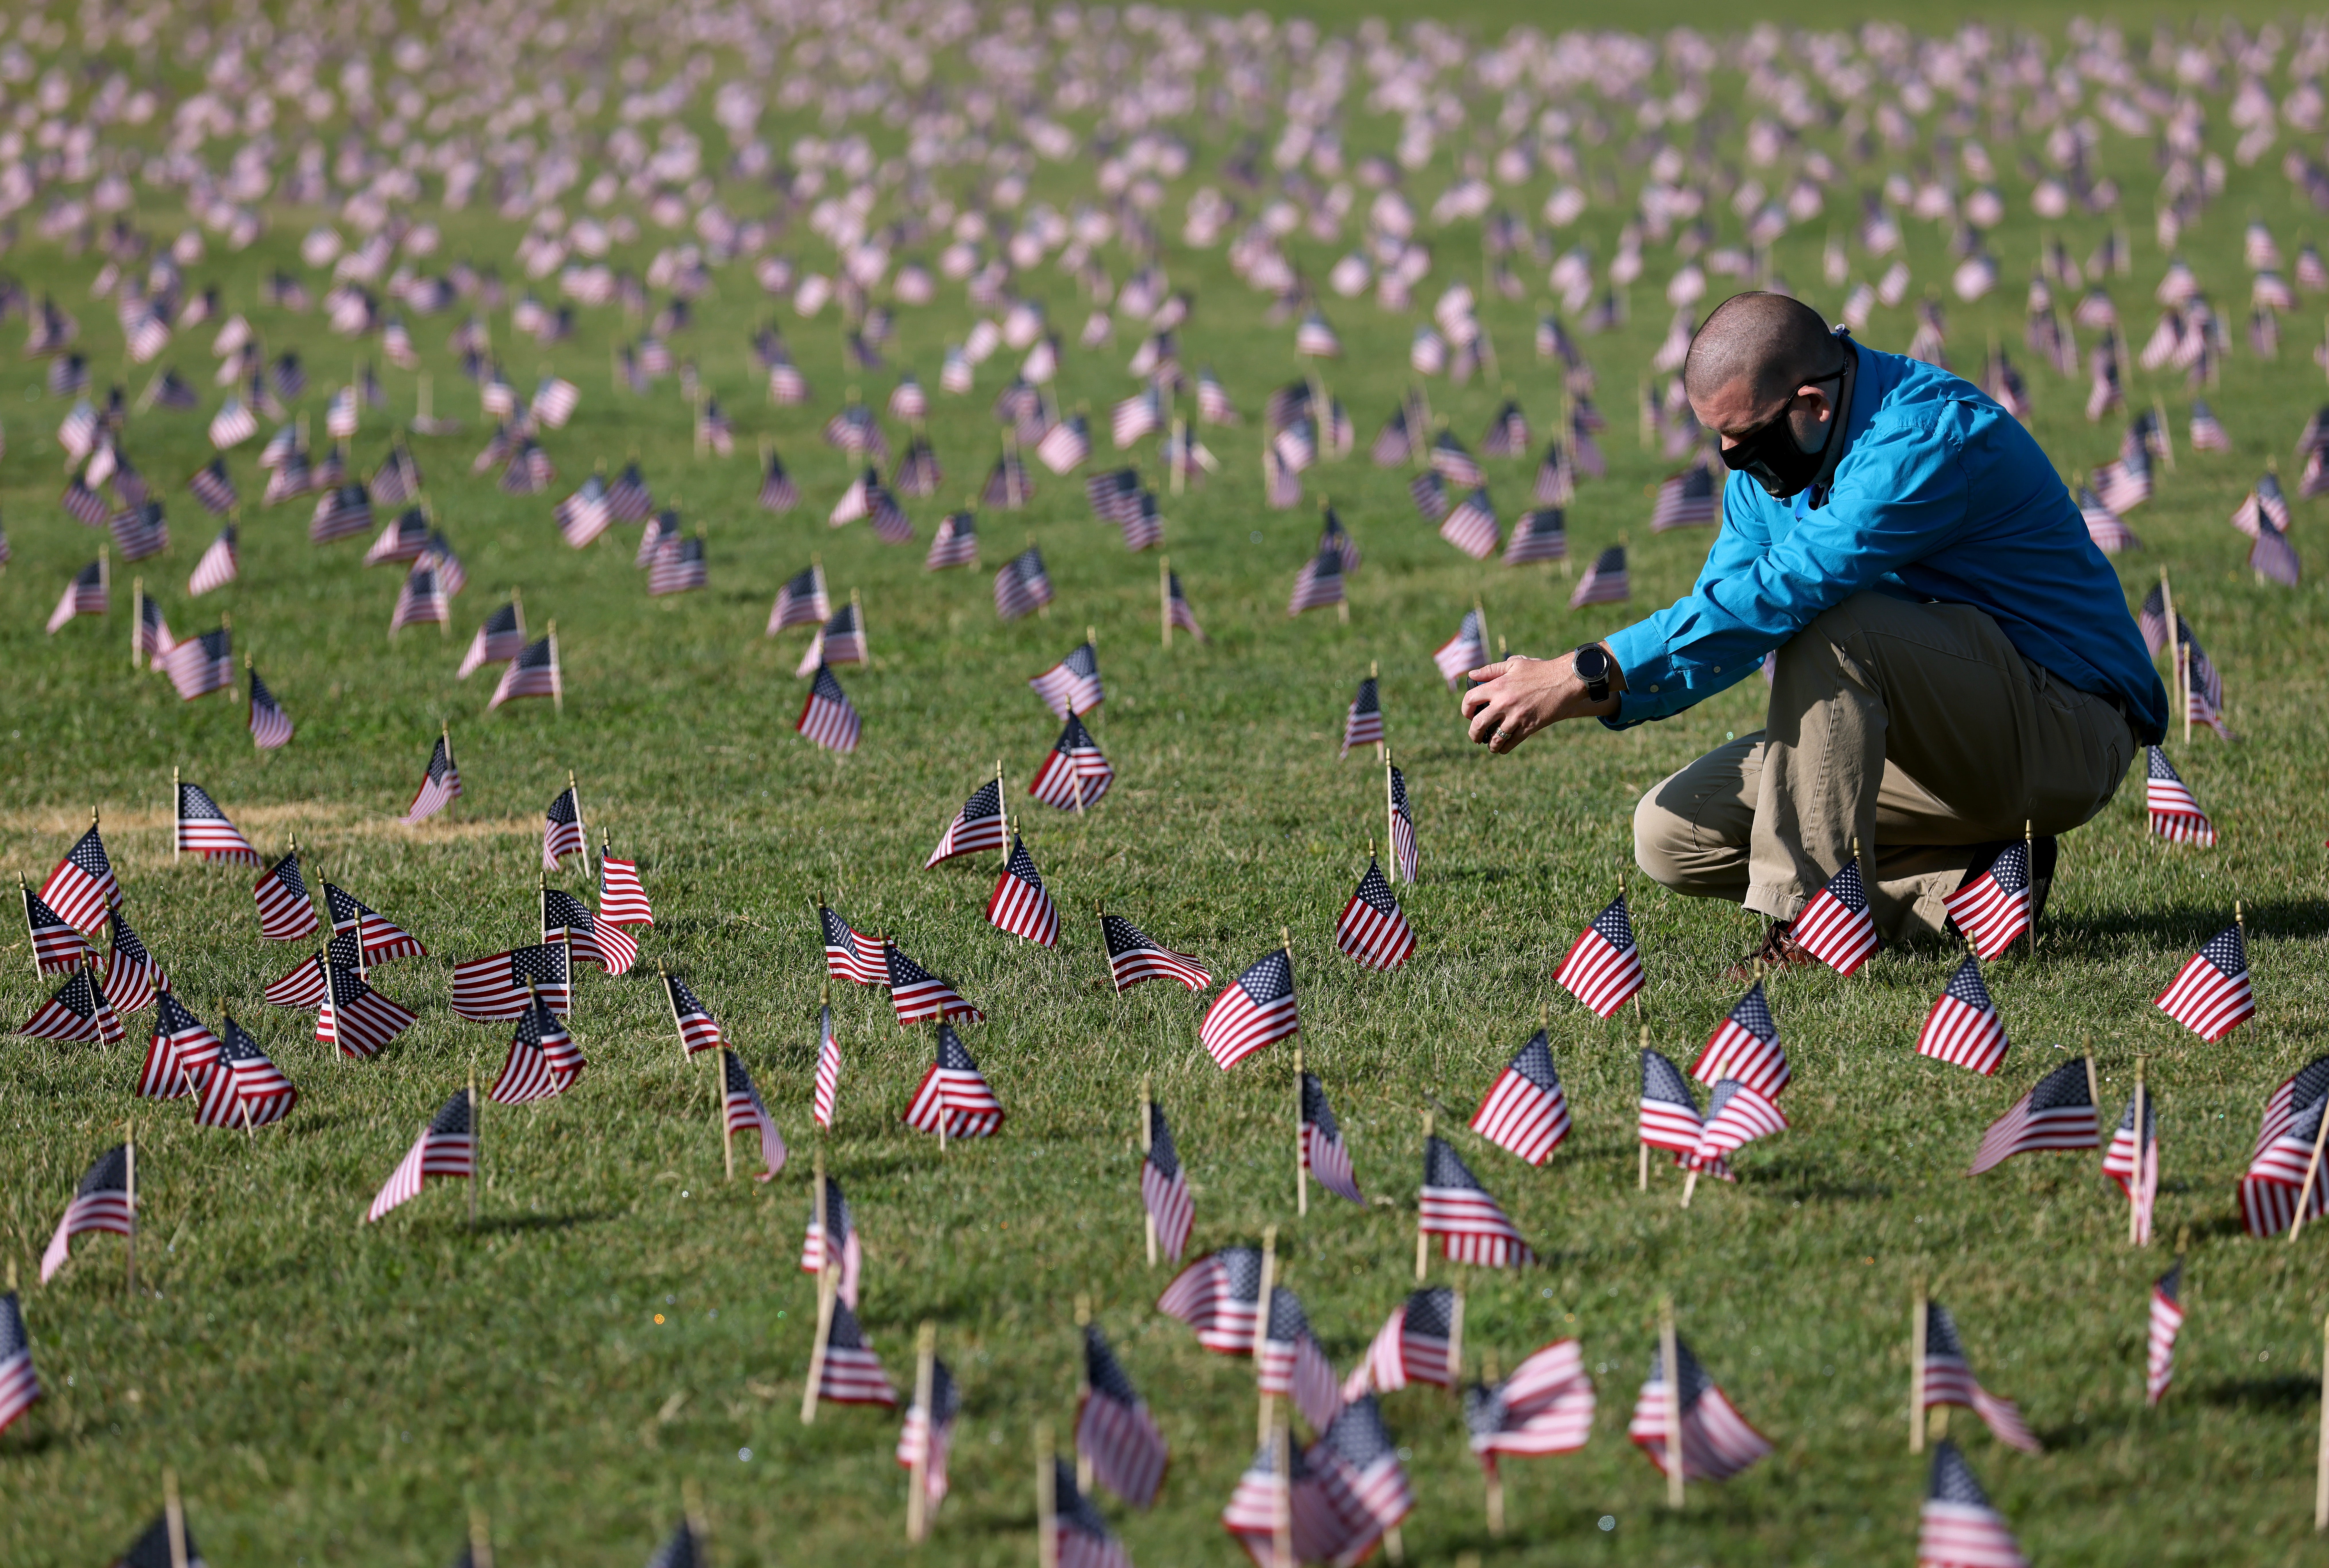 Chris Duncan, cuya madre Constance, de 75 años, murió de covid-19 el día de su cumpleaños, fotografía una instalación del Proyecto Conmemorativo de Covid-19 con 20.000 banderas estadounidenses en el National Mall de Washington, D. C.